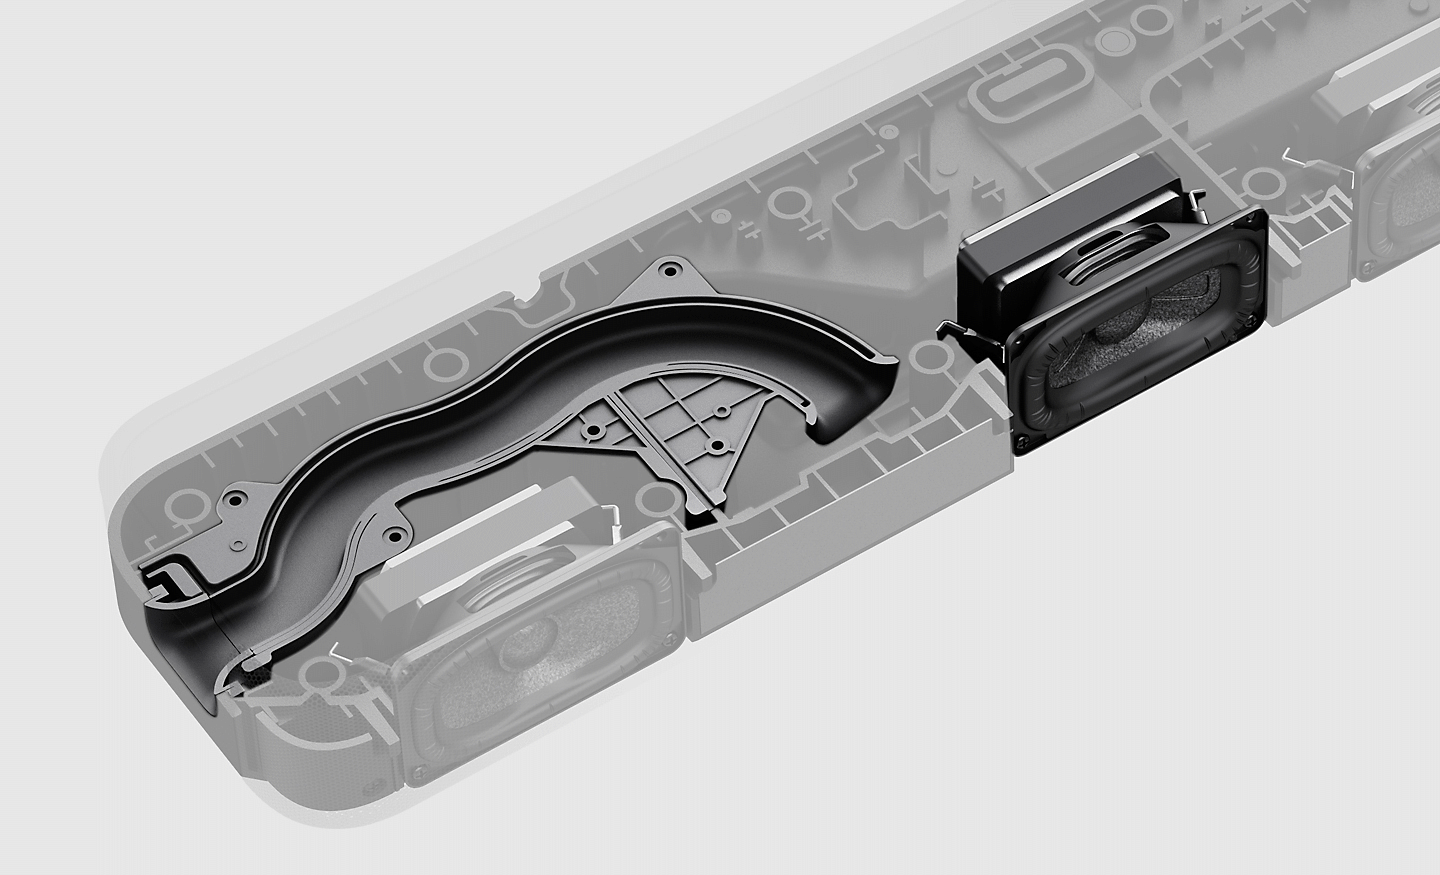 Obrázok vnútorných komponentov reproduktorového panelu HT-S2000 so zaostrením na trubicu a reproduktor